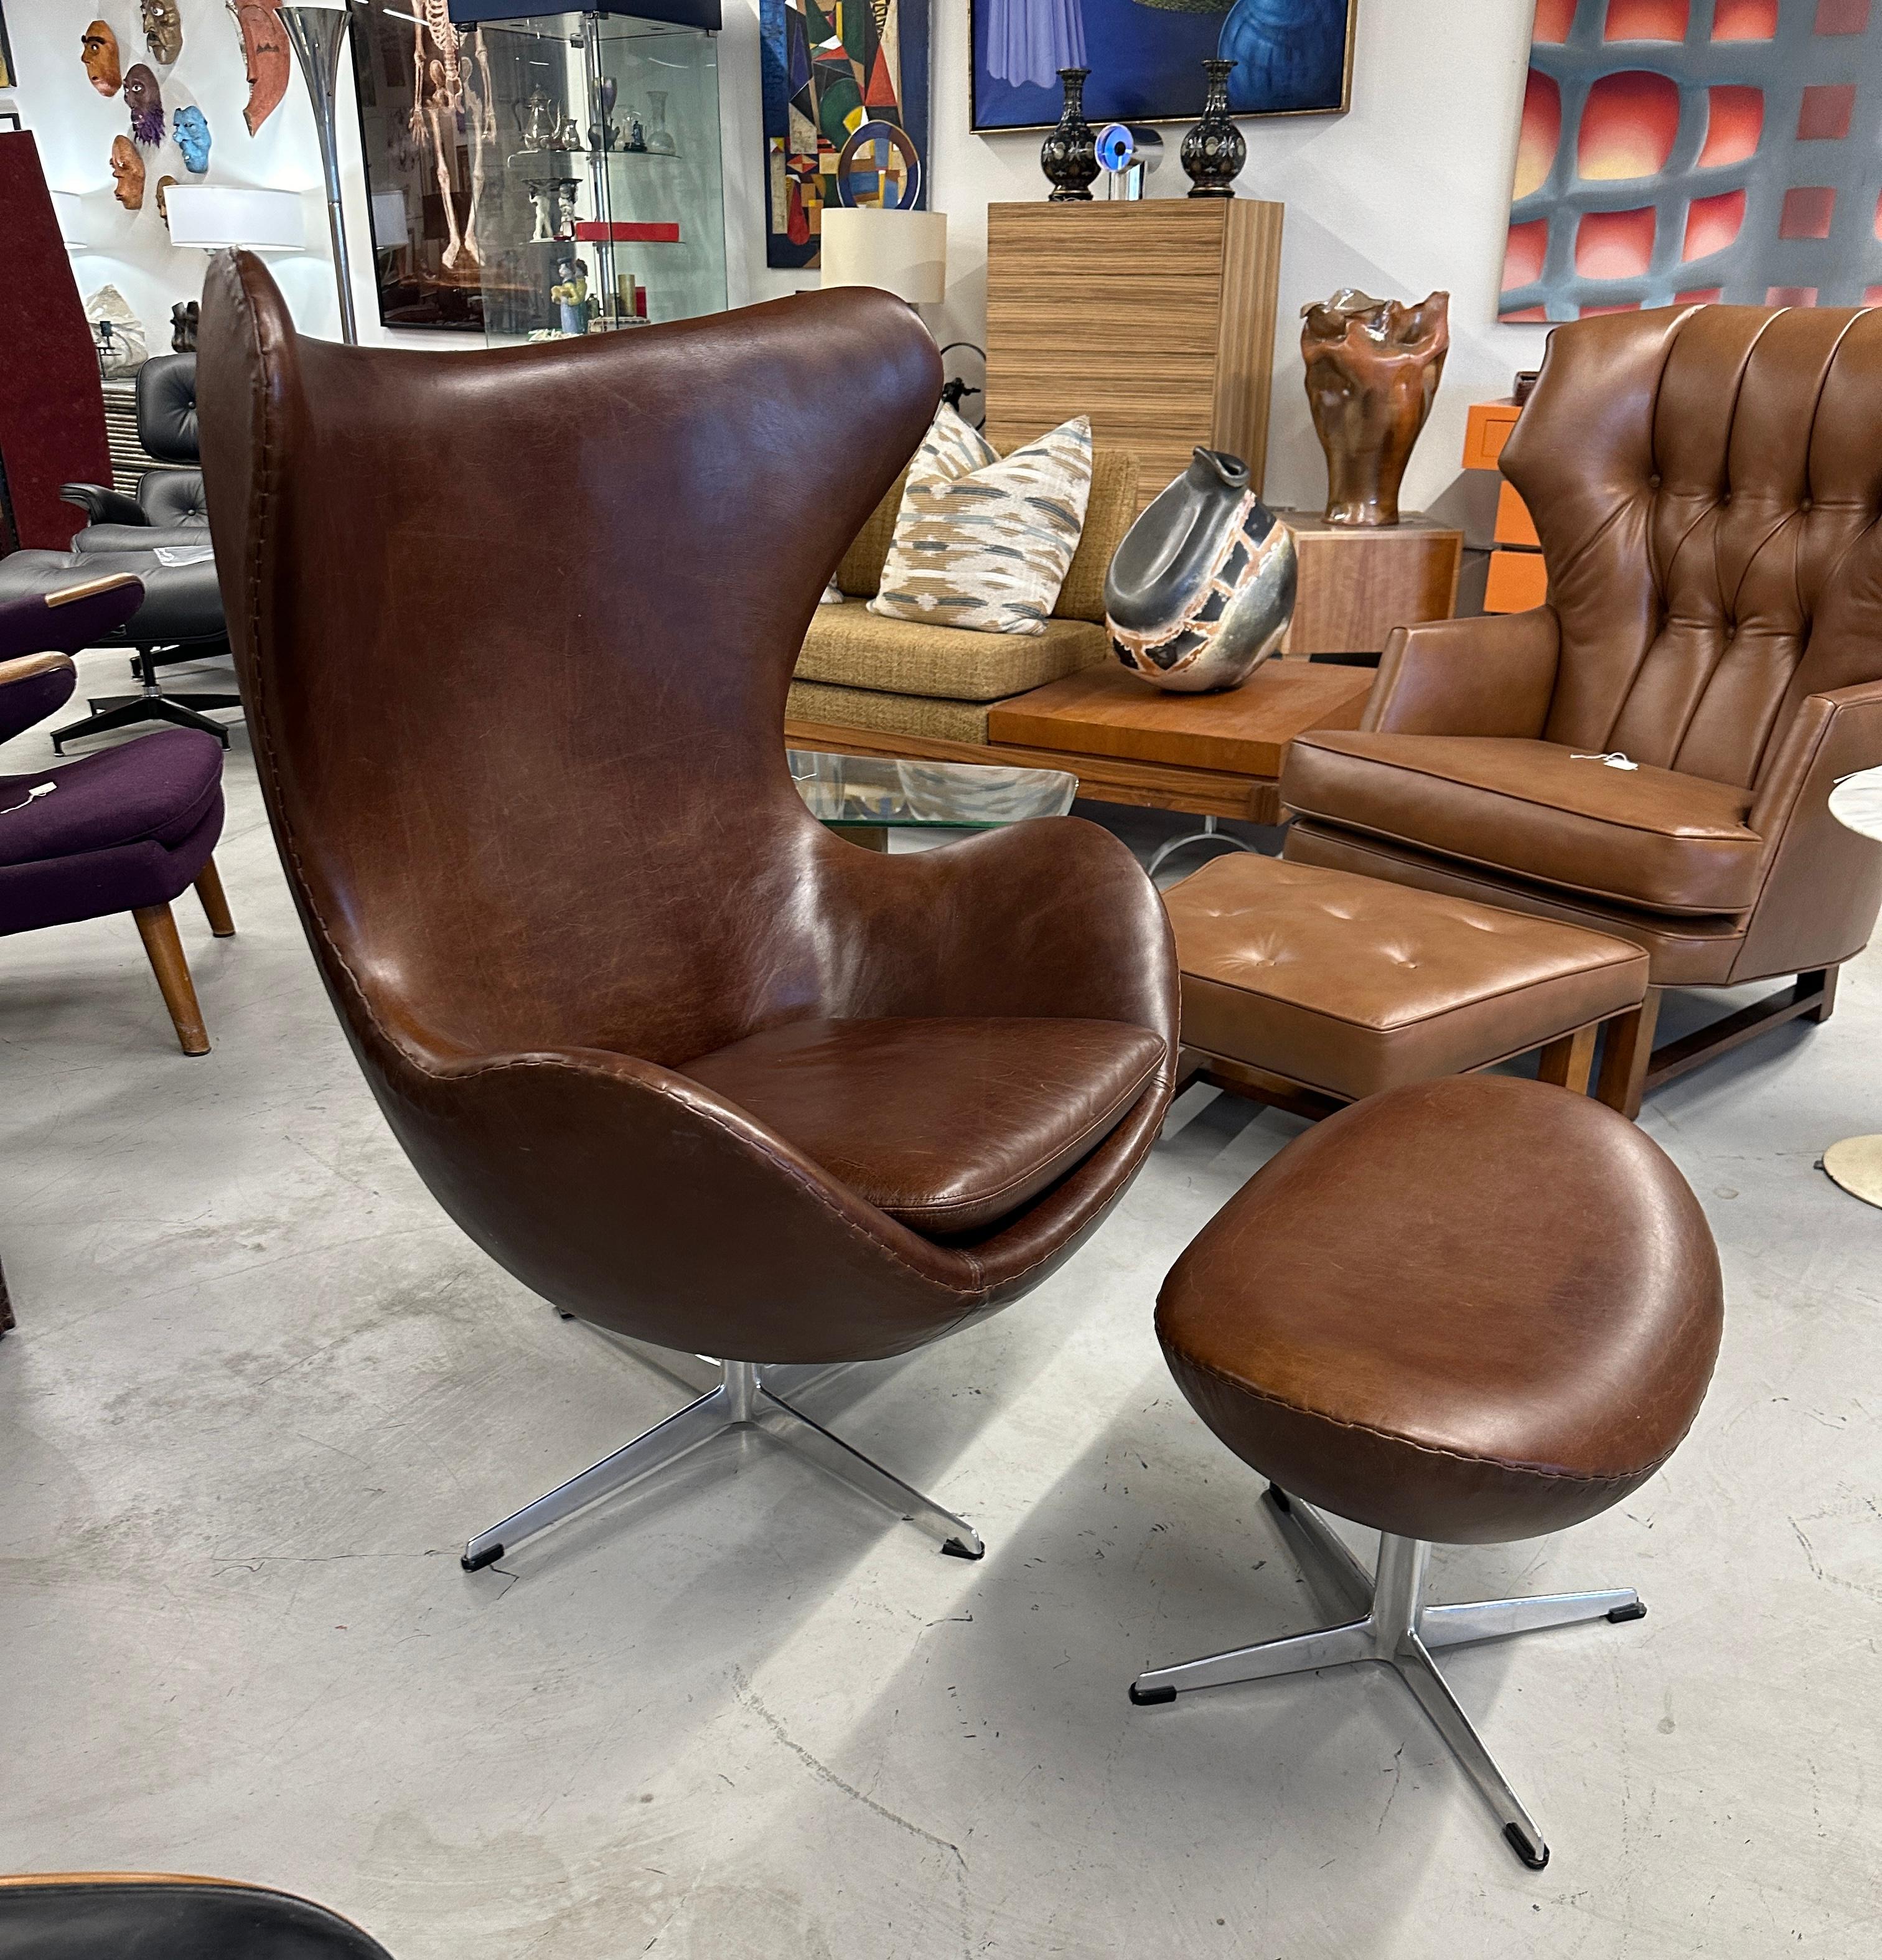 Un magnifique fauteuil Egg en cuir marron conçu par Arne Jacobsen et produit par Fritz Hansen au Danemark. Cet exemplaire provient d'une magnifique propriété de Palm Springs et porte un Label de Fritz Hansen avec le code de date 0865 qui le date de